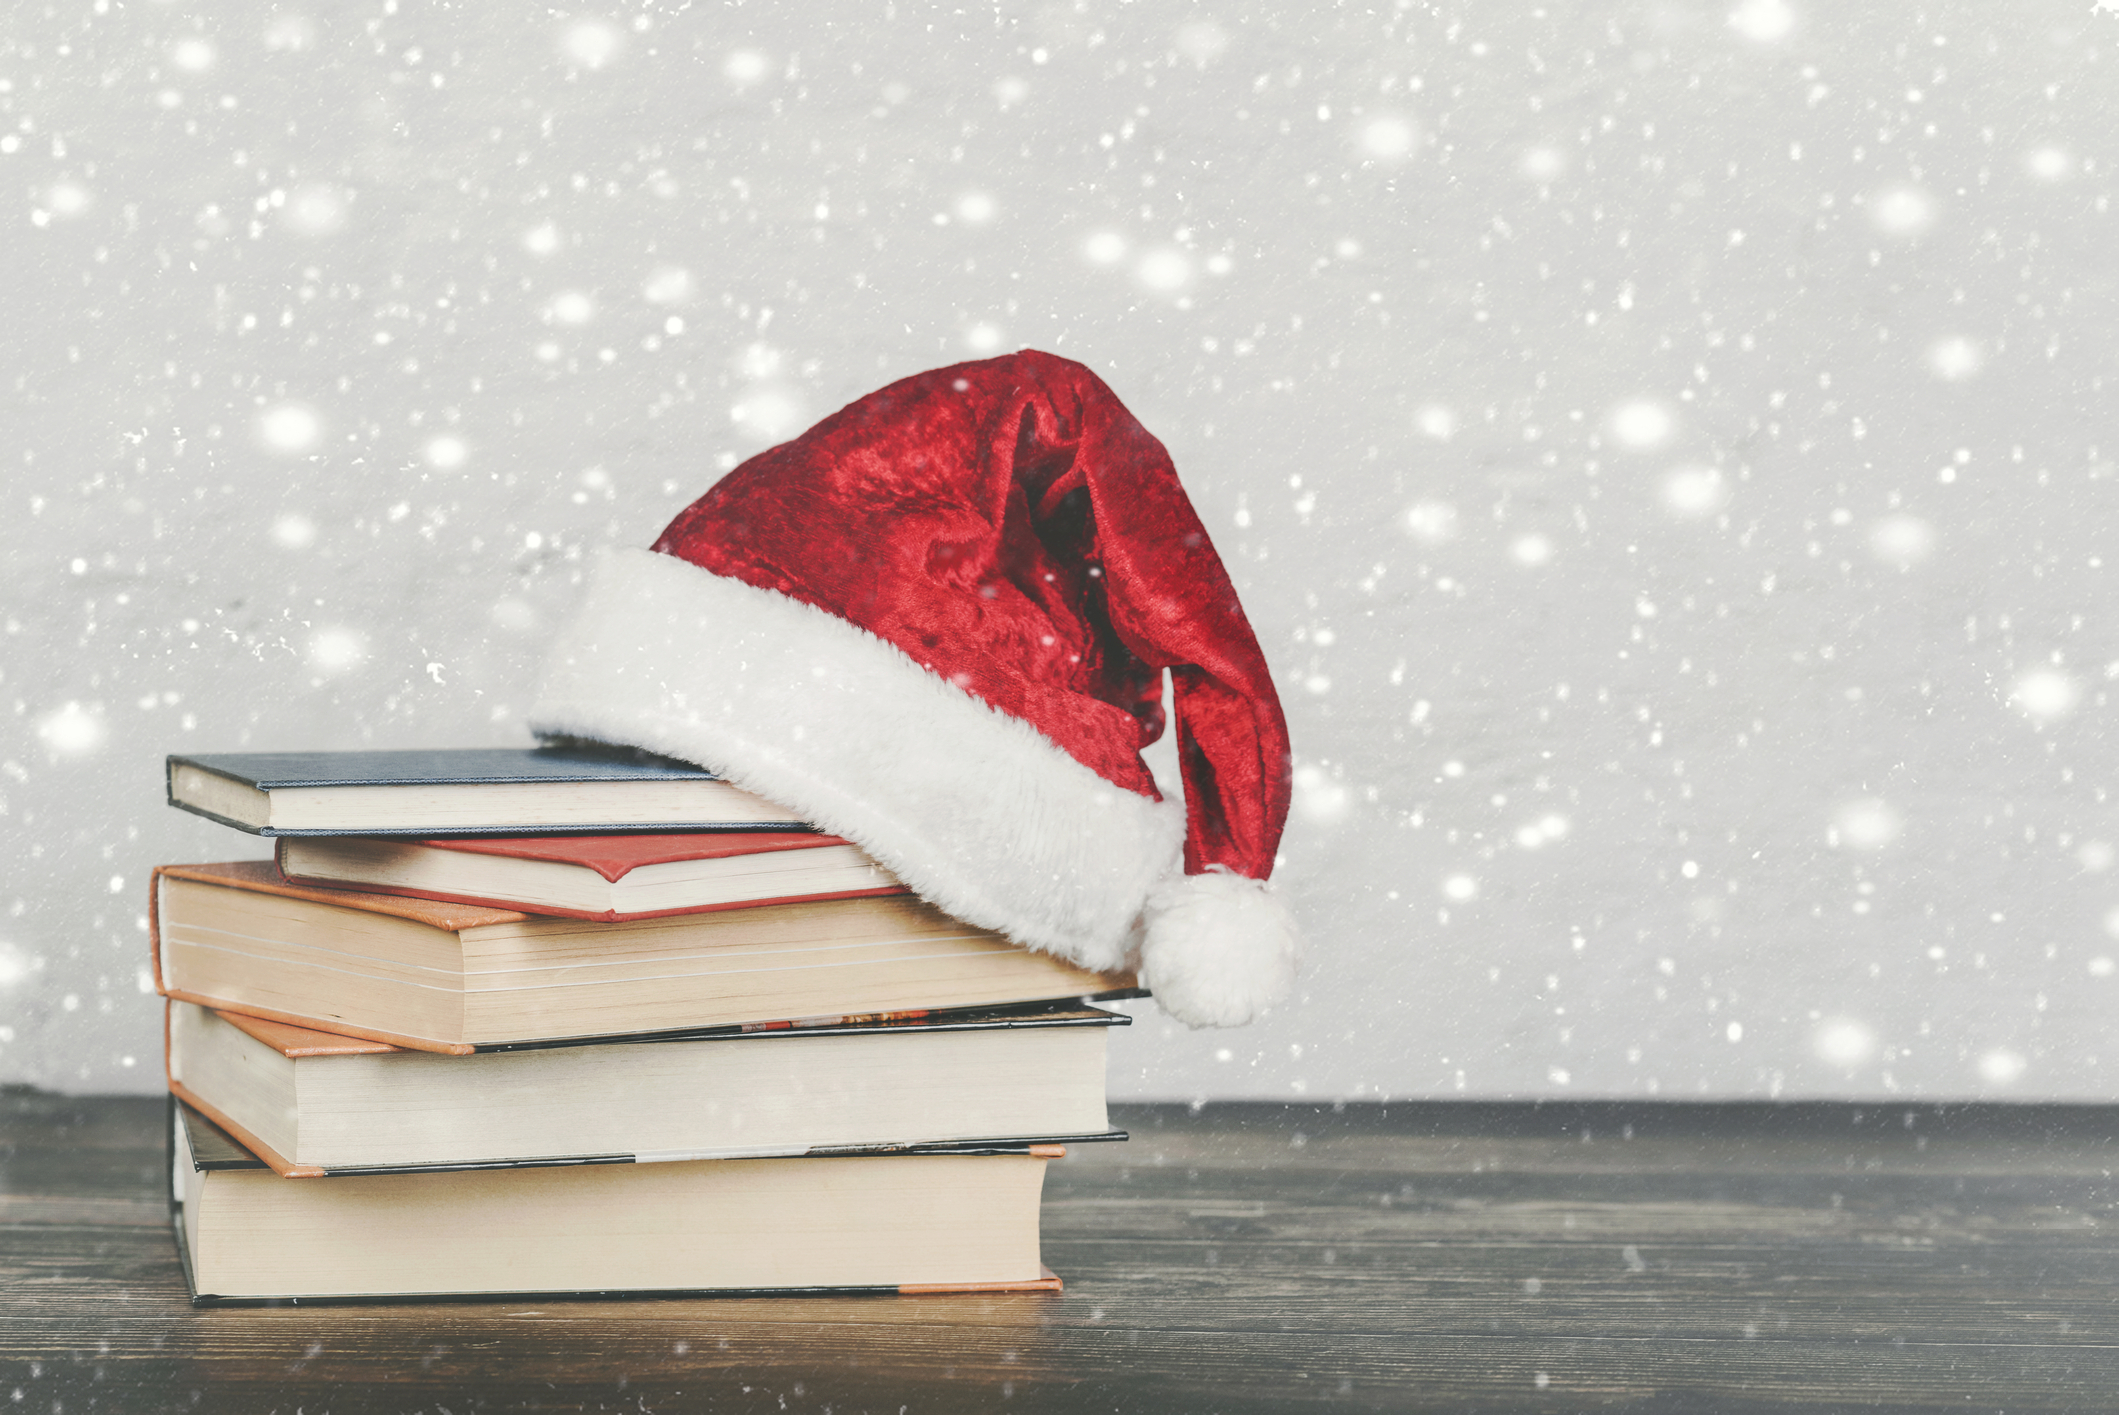 Cărțile devin din ce în ce mai populare printre cadourile de Crăciun